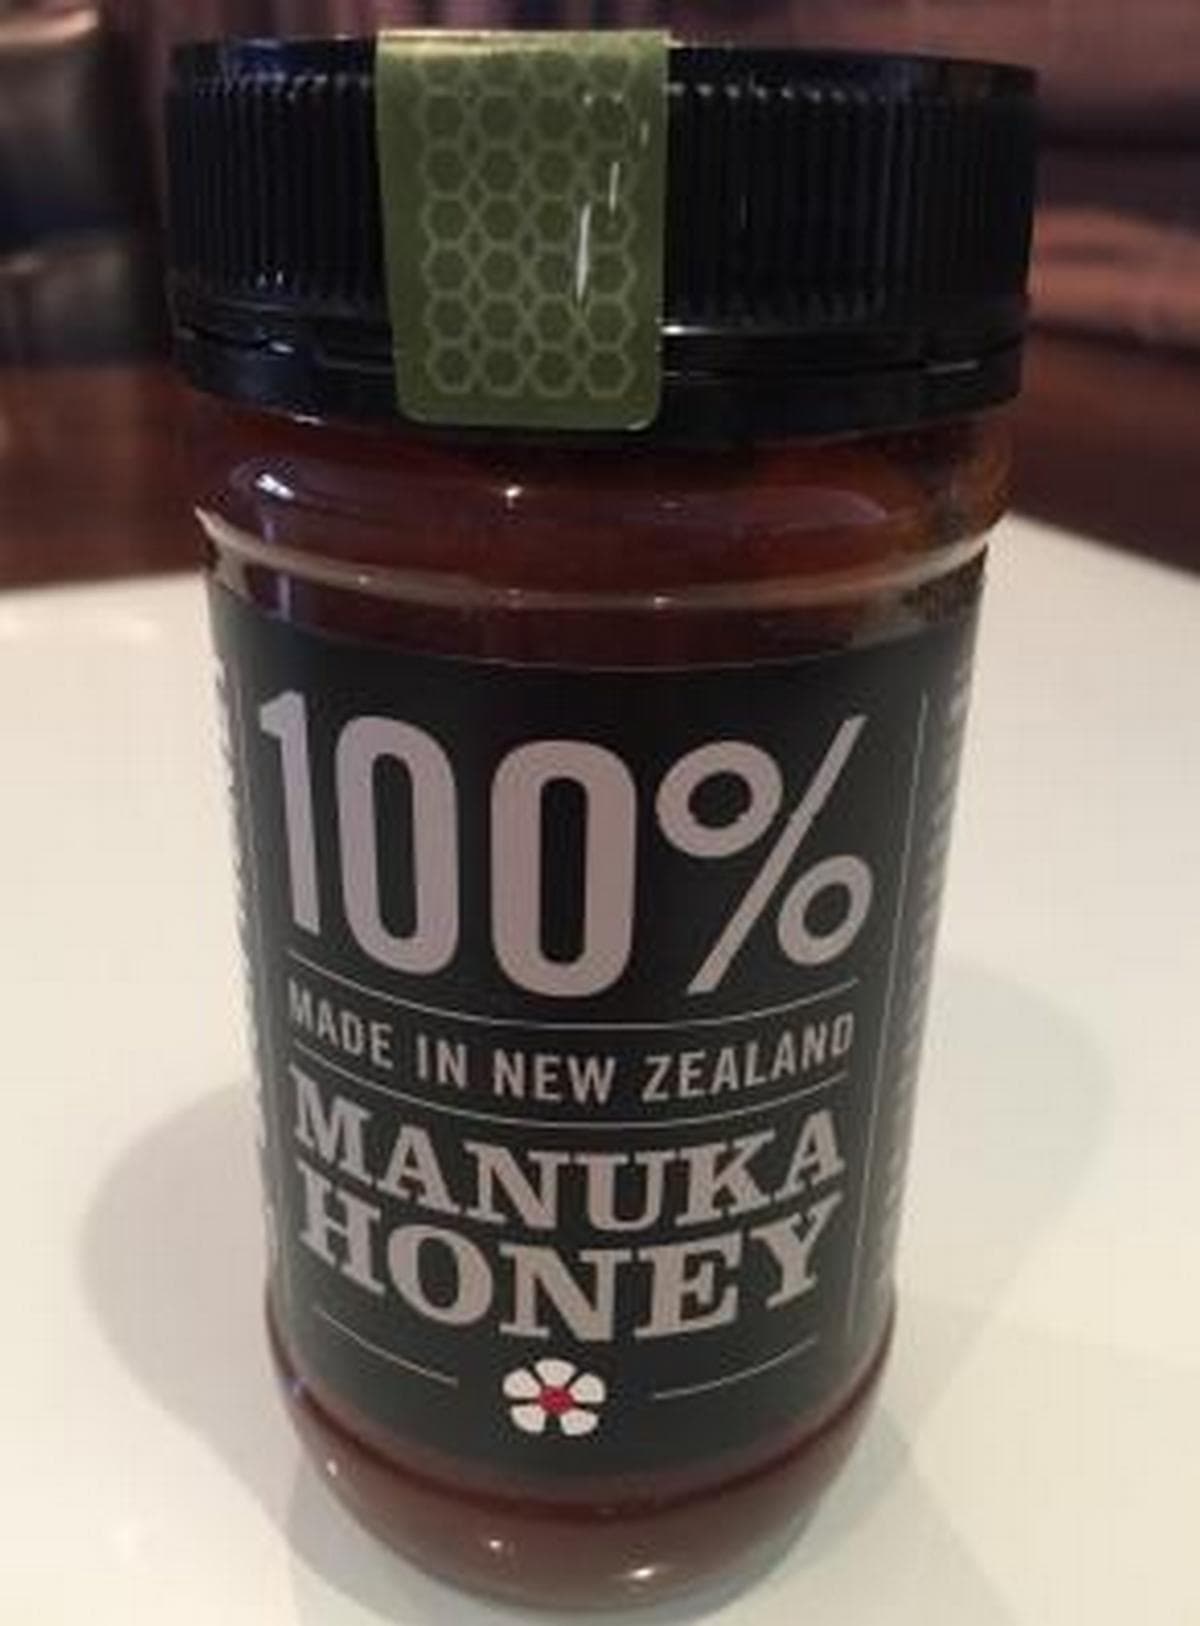 New Zealand Manuka Honey UMF _15 250gm Jar